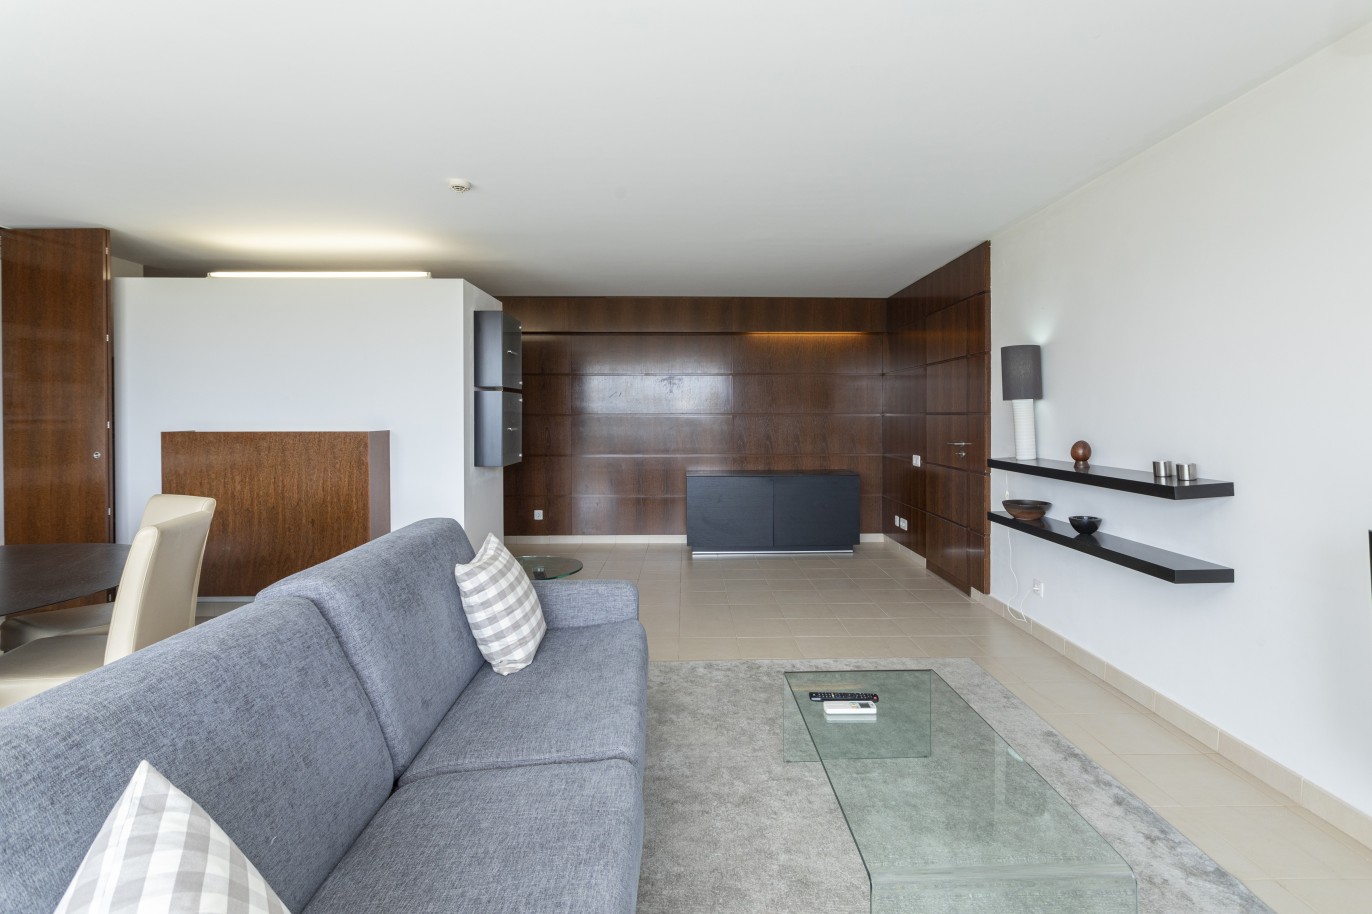 1 bedroom apartment in luxury condominium, for sale in Salgados, Algarve_228186